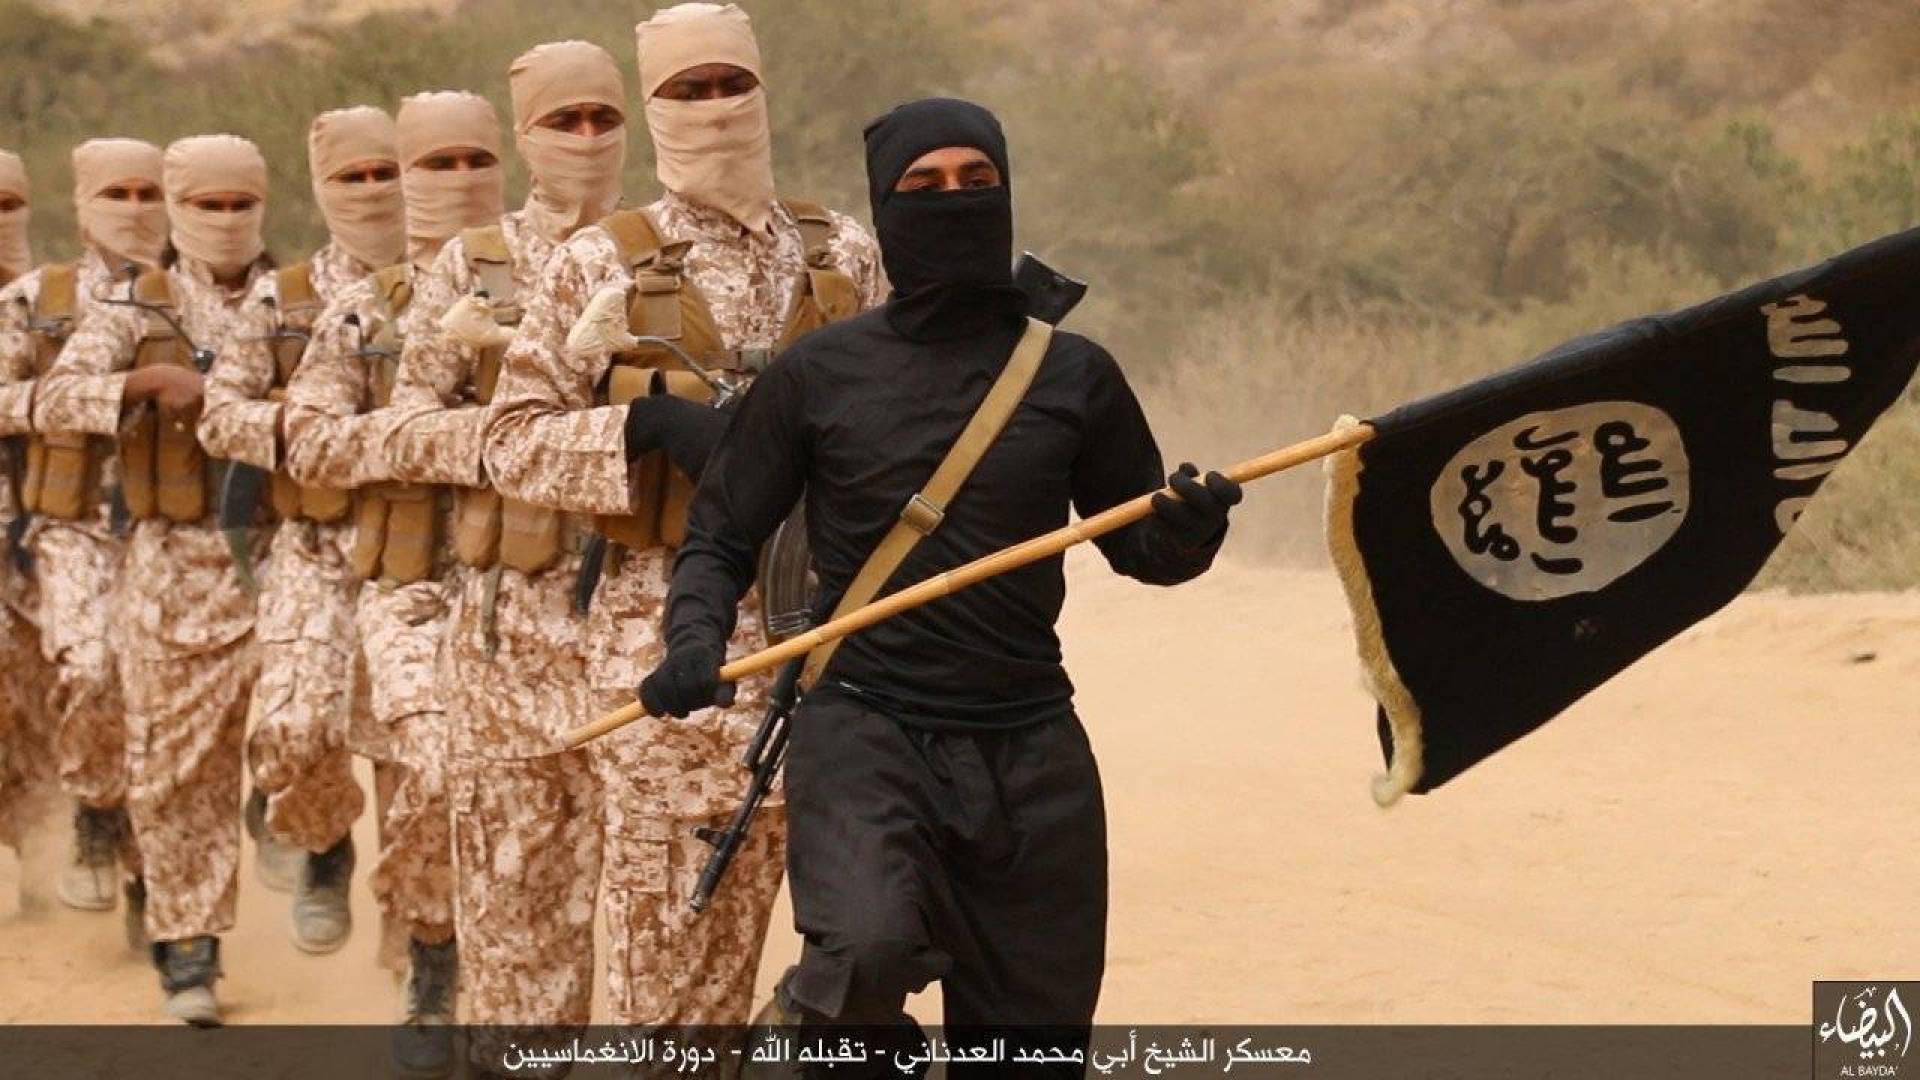 Фото игиловцев. Террористская группа Аль-Каида. Аль Каида и США.